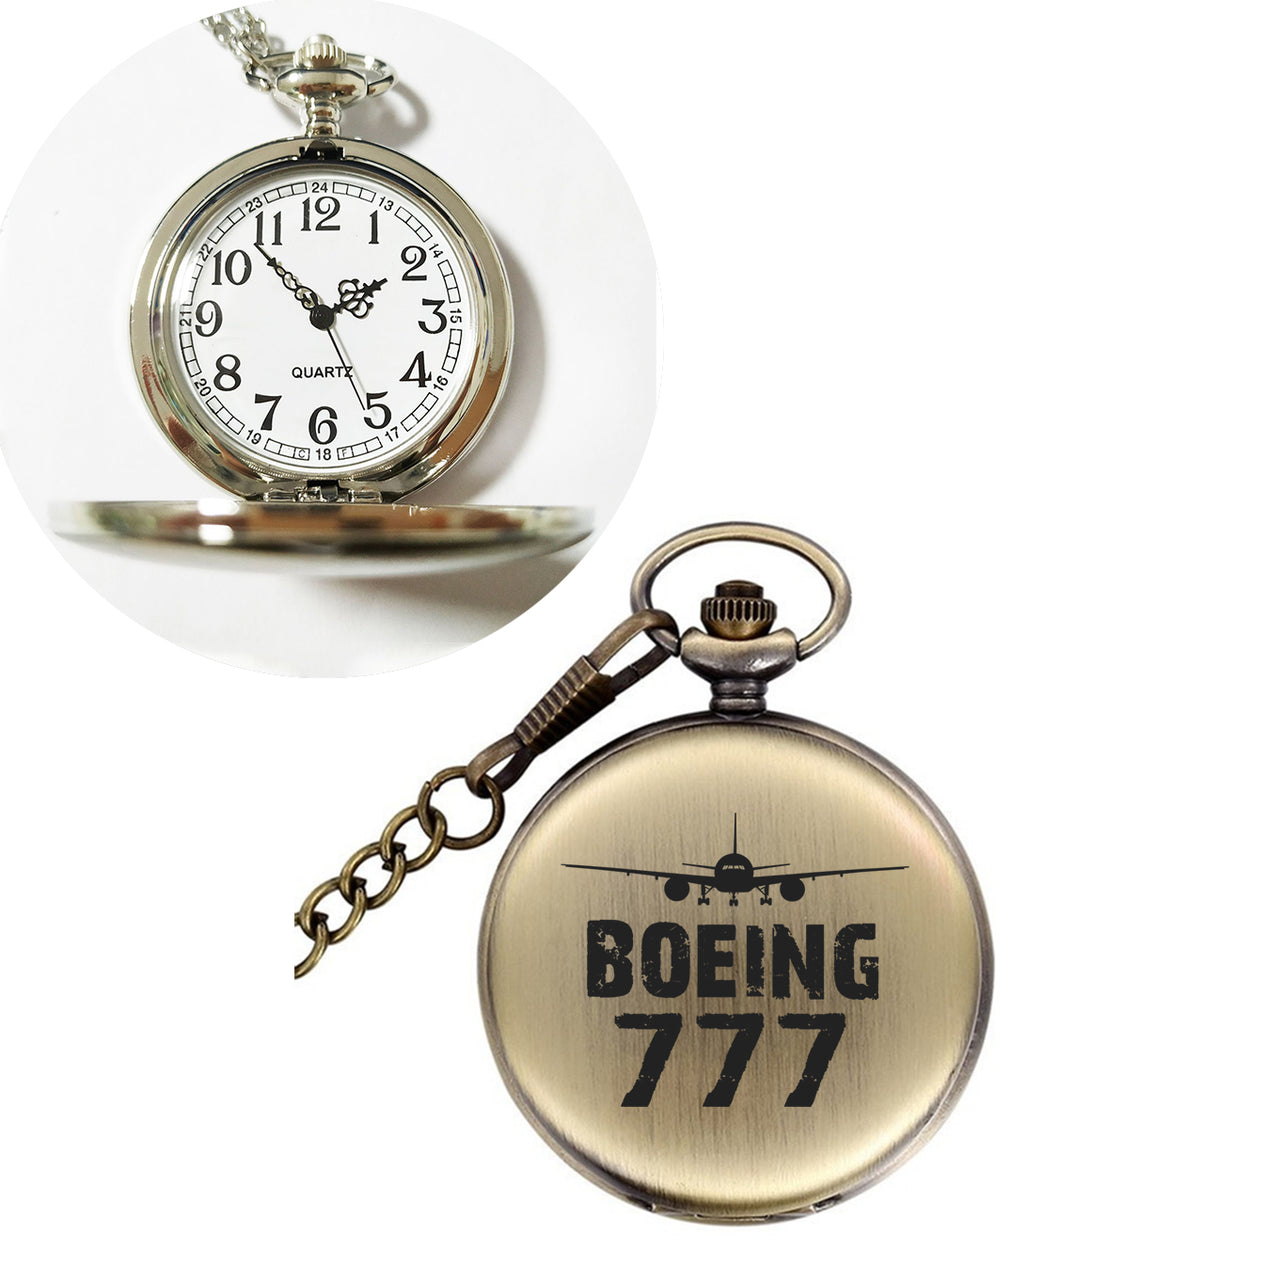 Boeing 777 & Plane Designed Pocket Watches